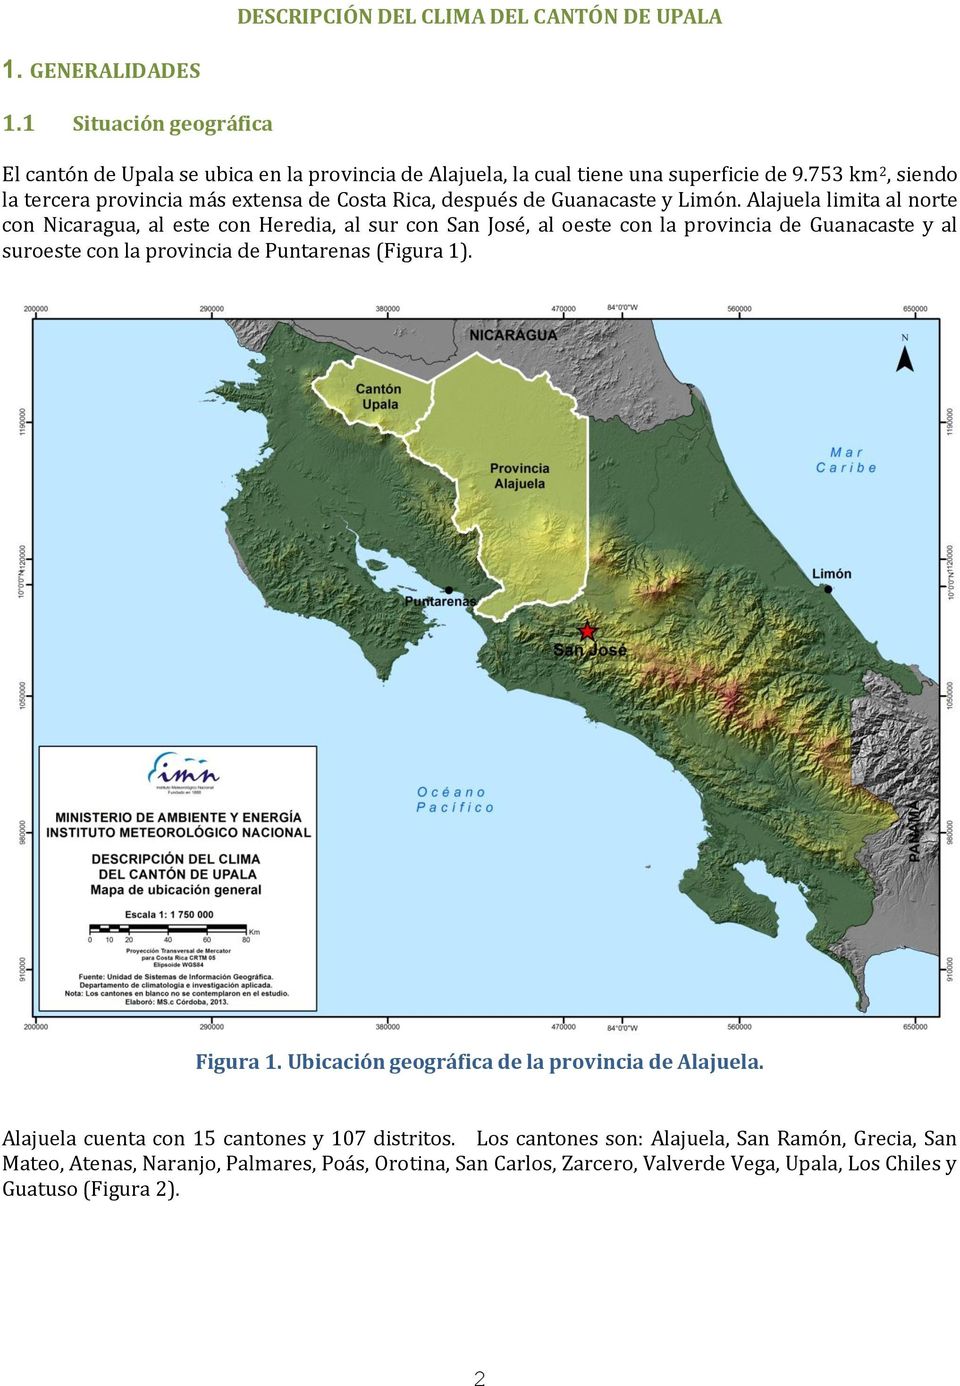 Alajuela limita al norte con Nicaragua, al este con Heredia, al sur con San José, al oeste con la provincia de Guanacaste y al suroeste con la provincia de Puntarenas (Figura 1).